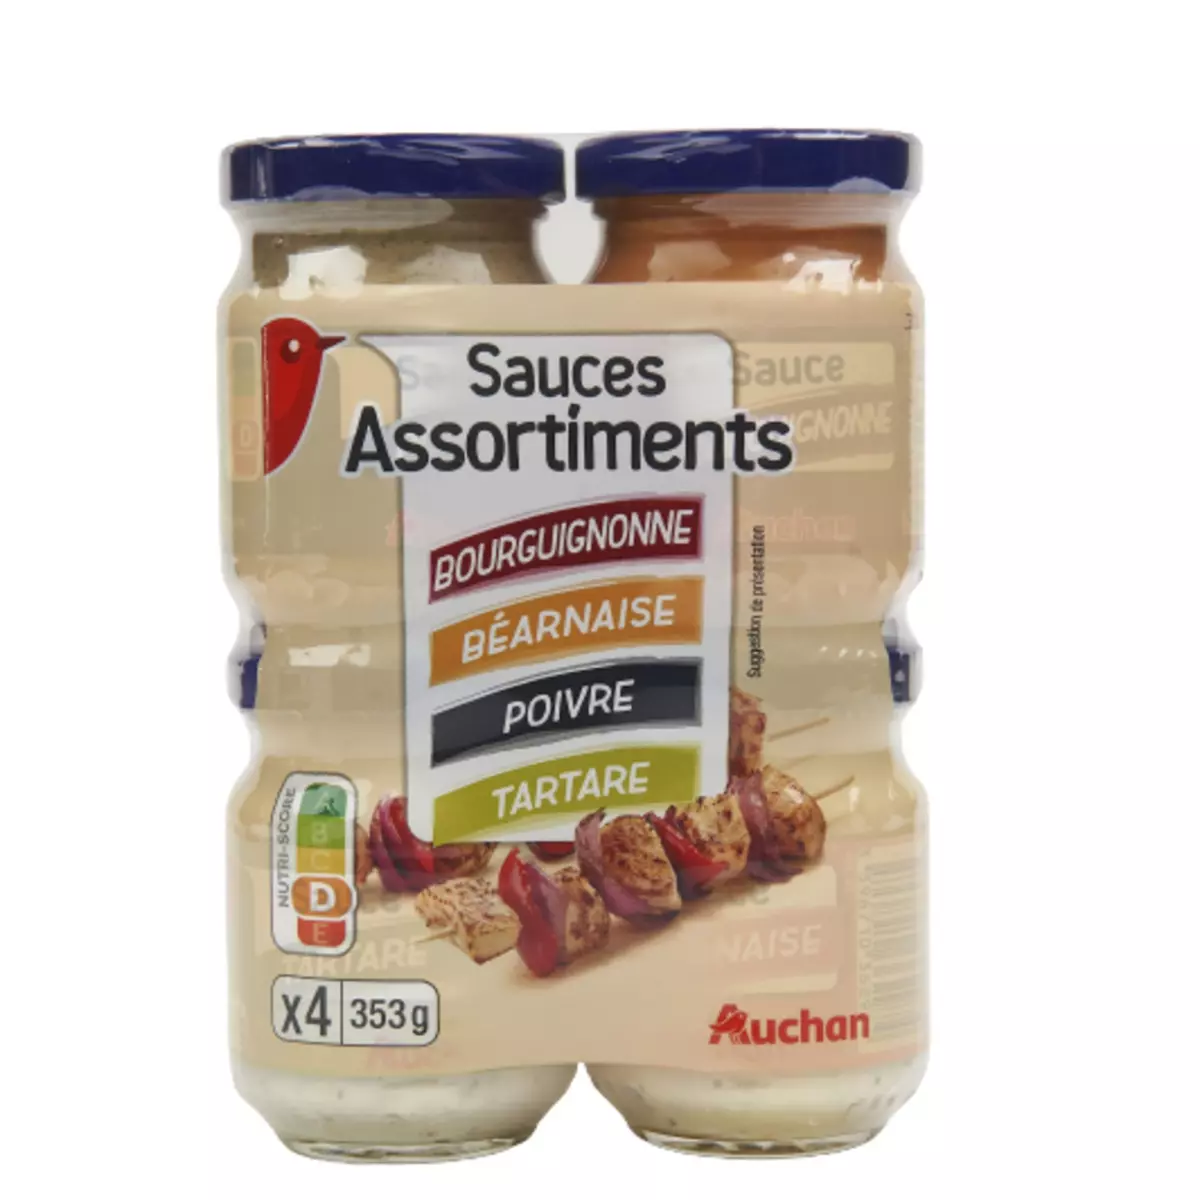 AUCHAN Assortiment sauces bourguignonne béarnaise poivre tartare 4 pièces 353g